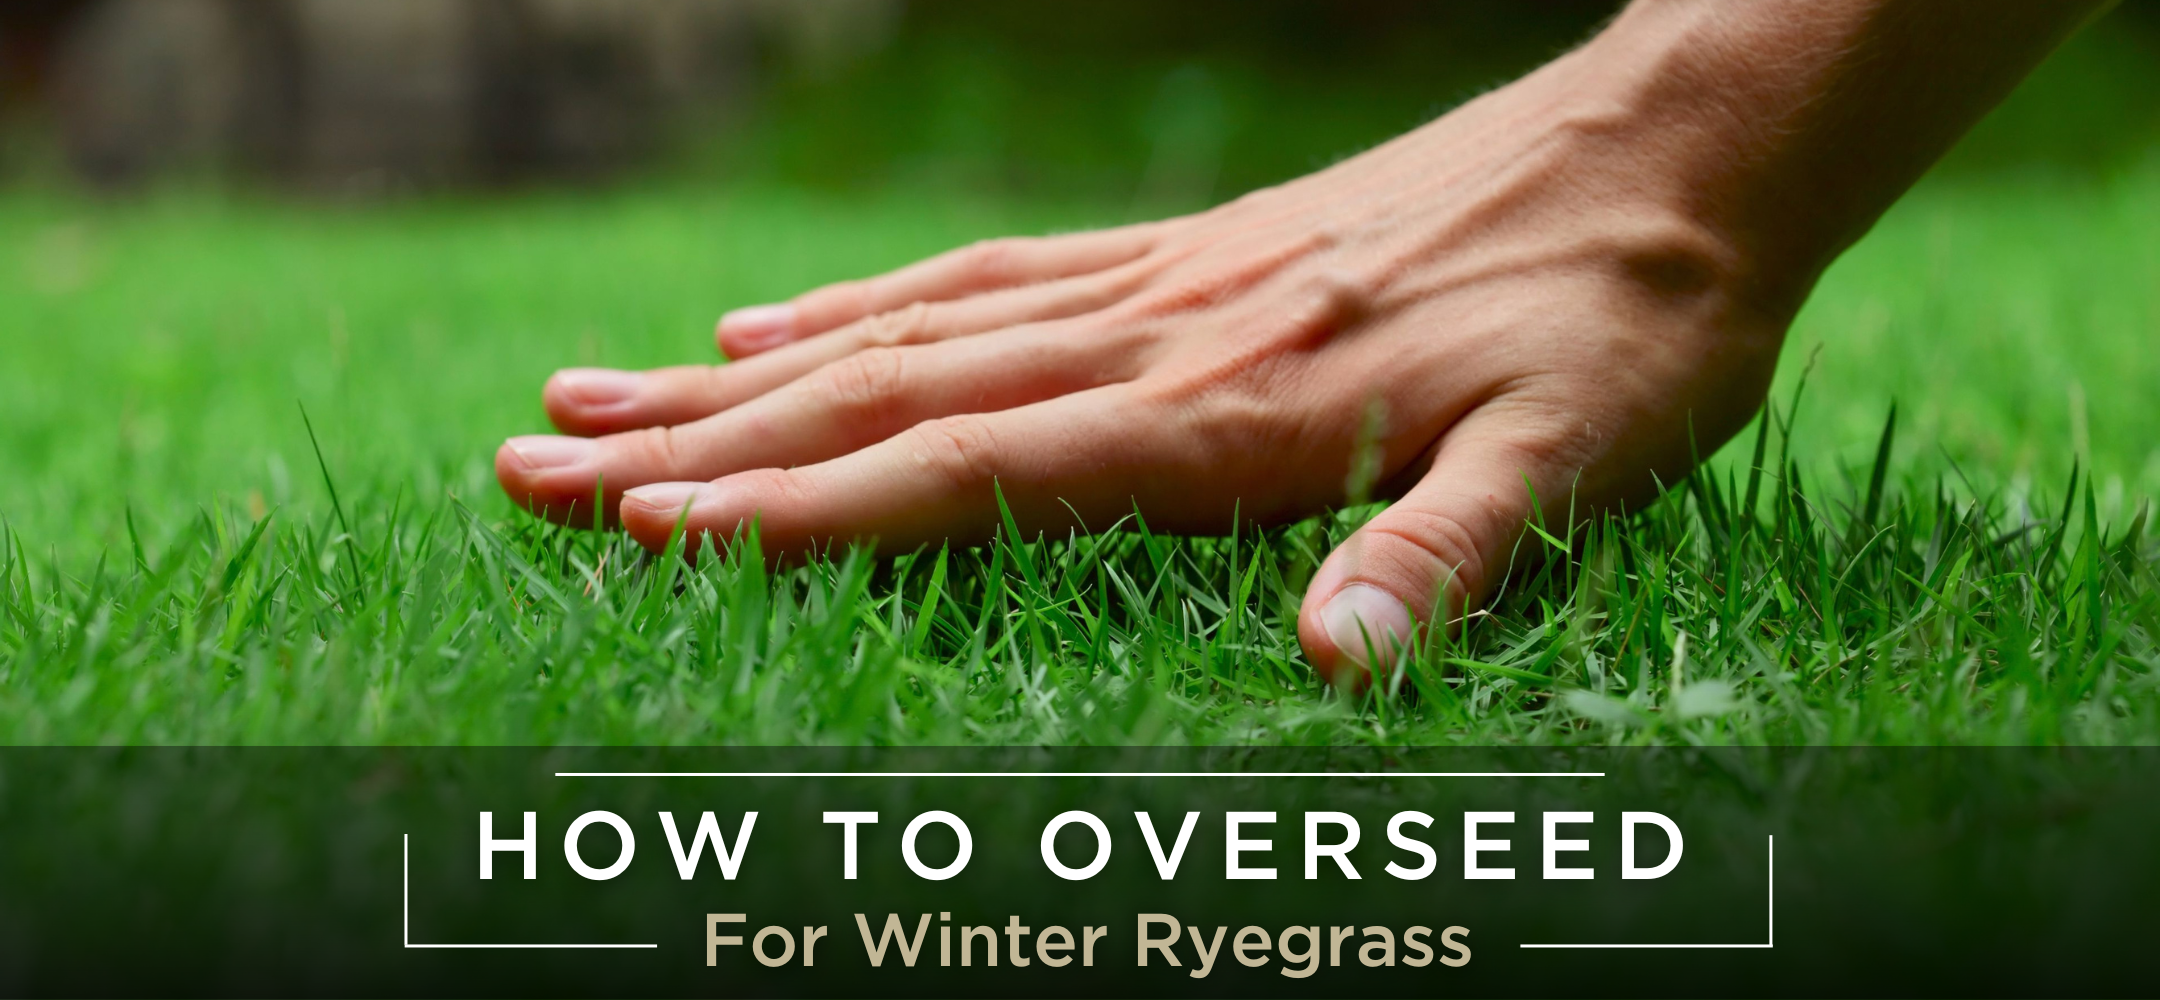 Overseeding winter rygrass